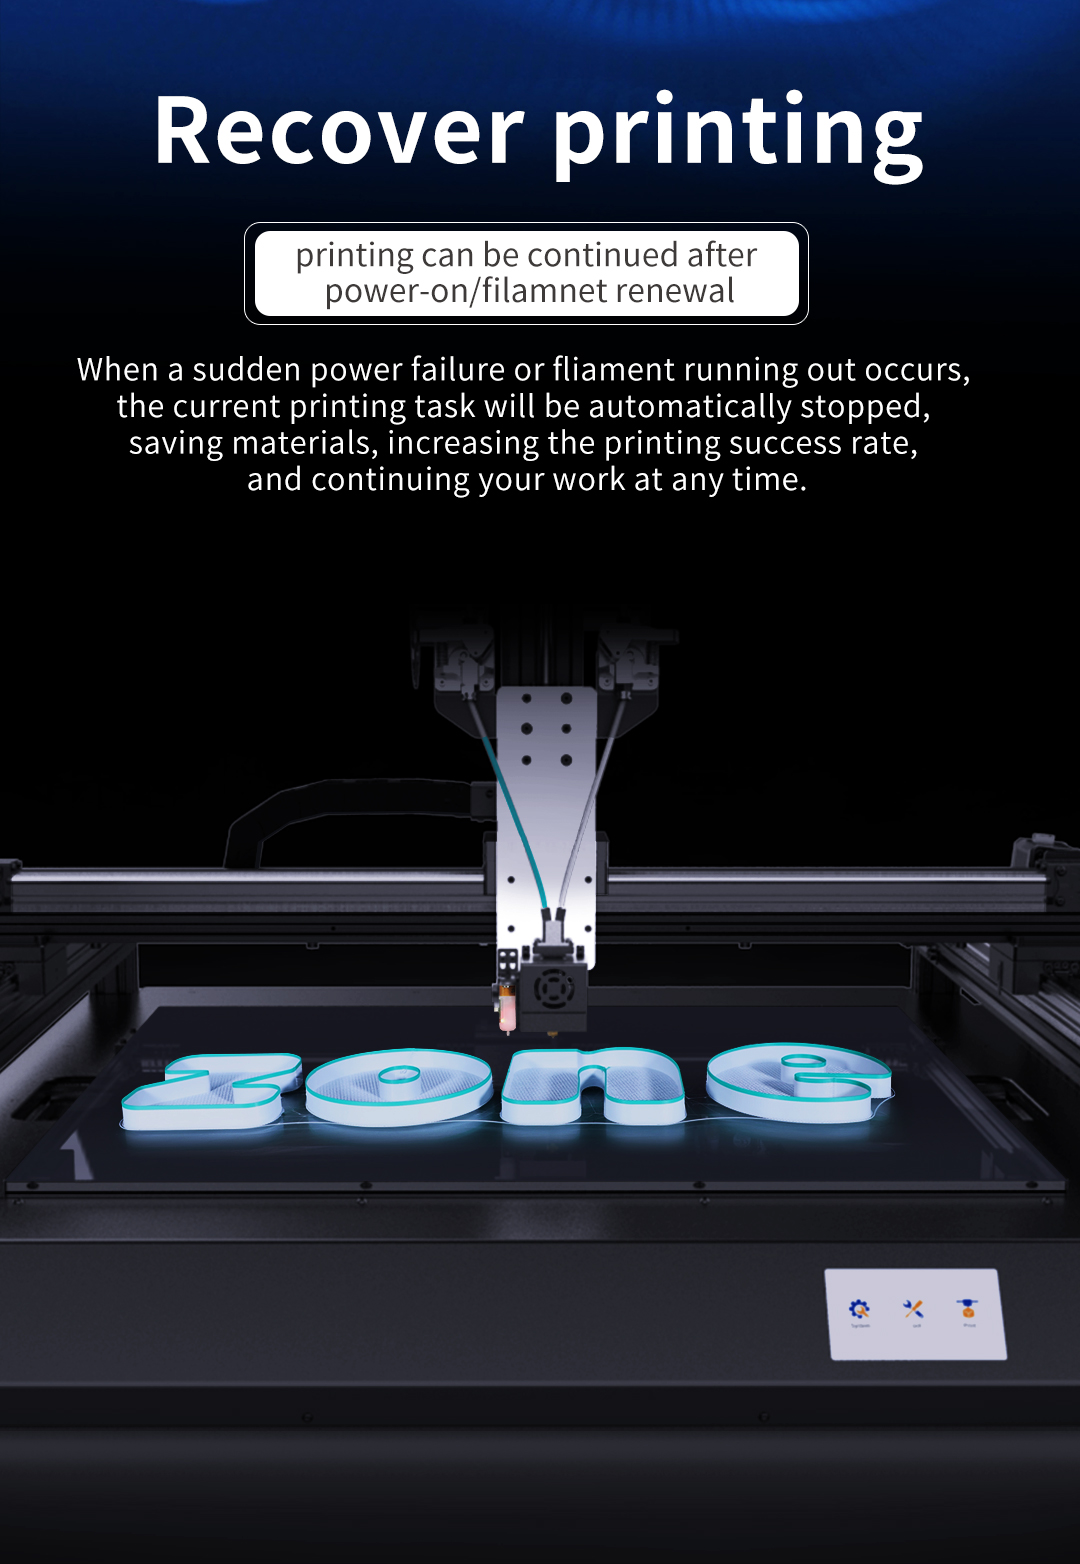 K6 channel letter 3D printer